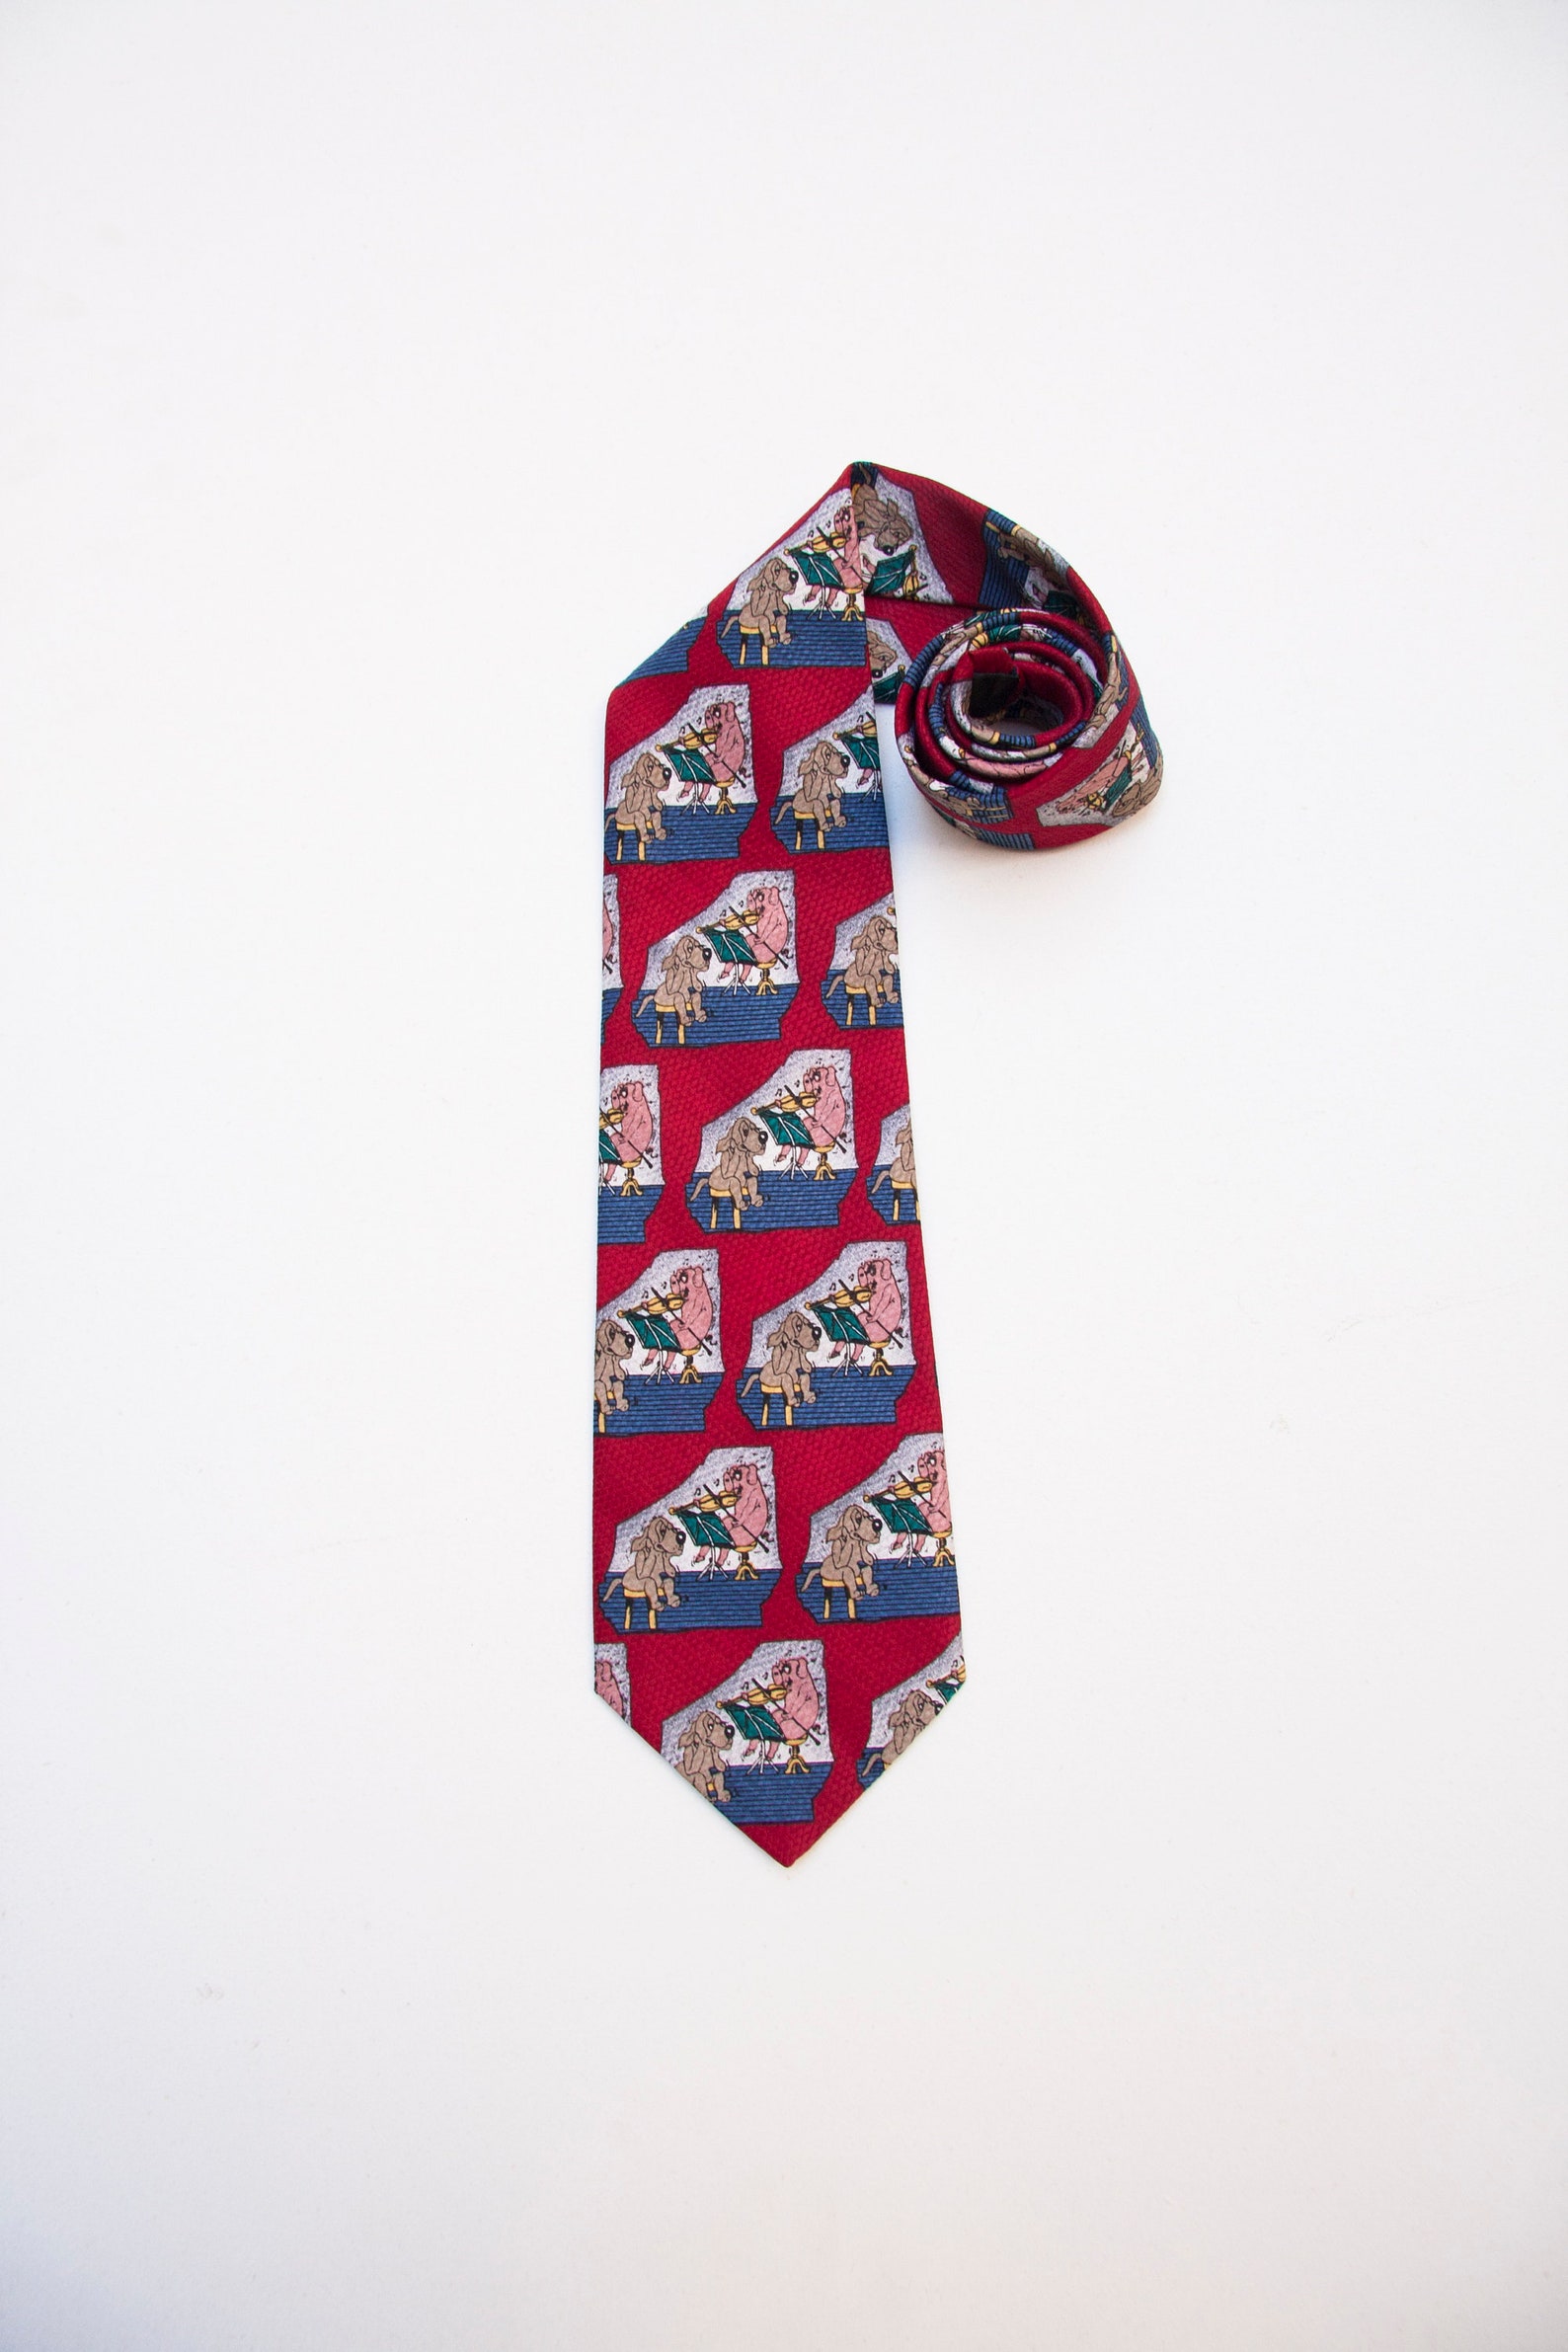 Vintage Necktie for Men 80s Suit Tie Mens Patterned Neck Tie - Etsy